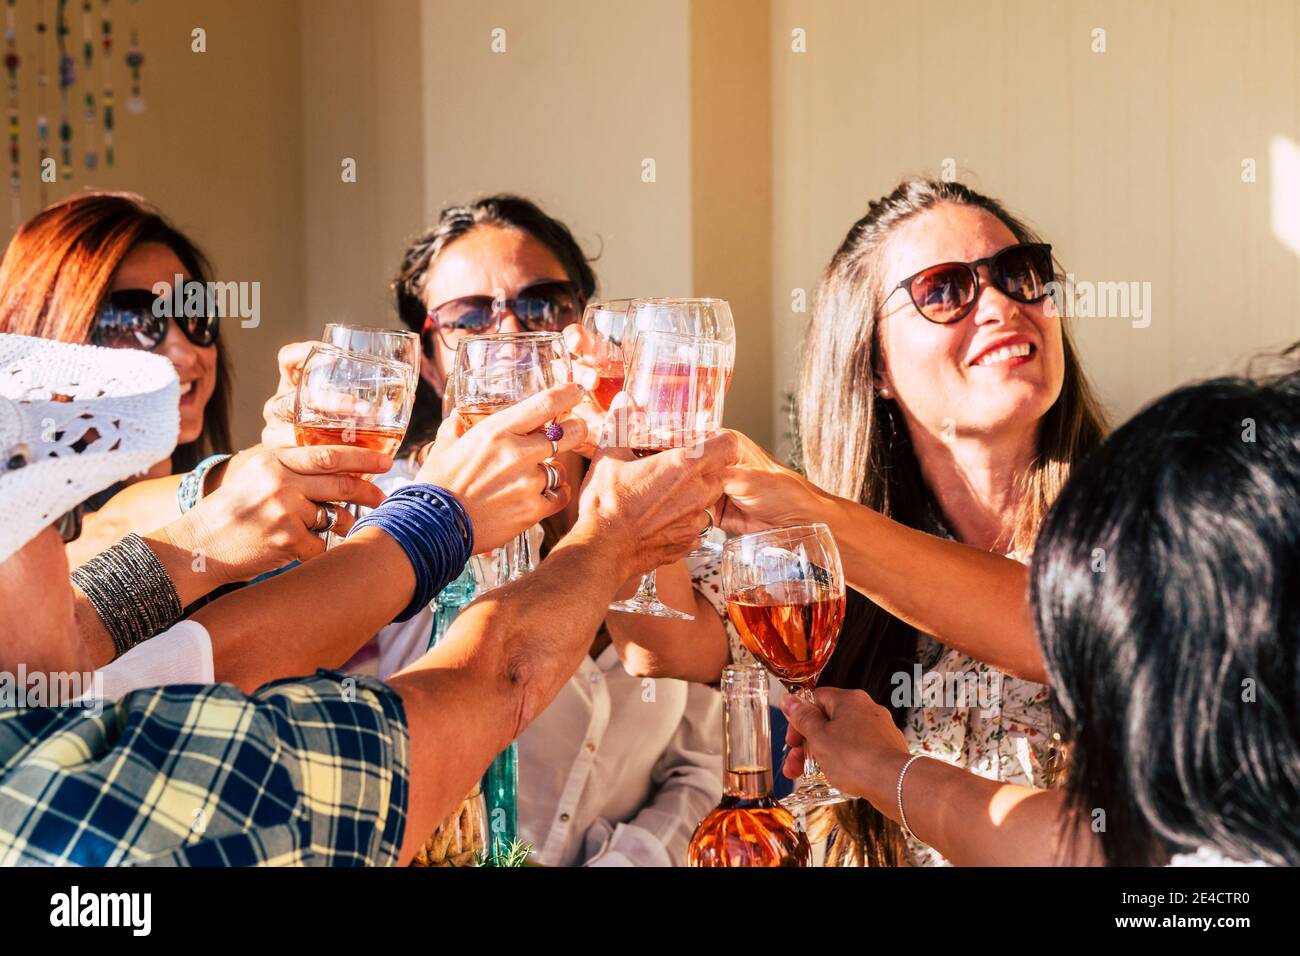 Gruppo di allegre giovani donne caucasiche che si divertono e festeggiano insieme unire i bicchieri di vino rosso: la gente si diverte celebrazione con bevande e cibo sul tavolo Foto Stock